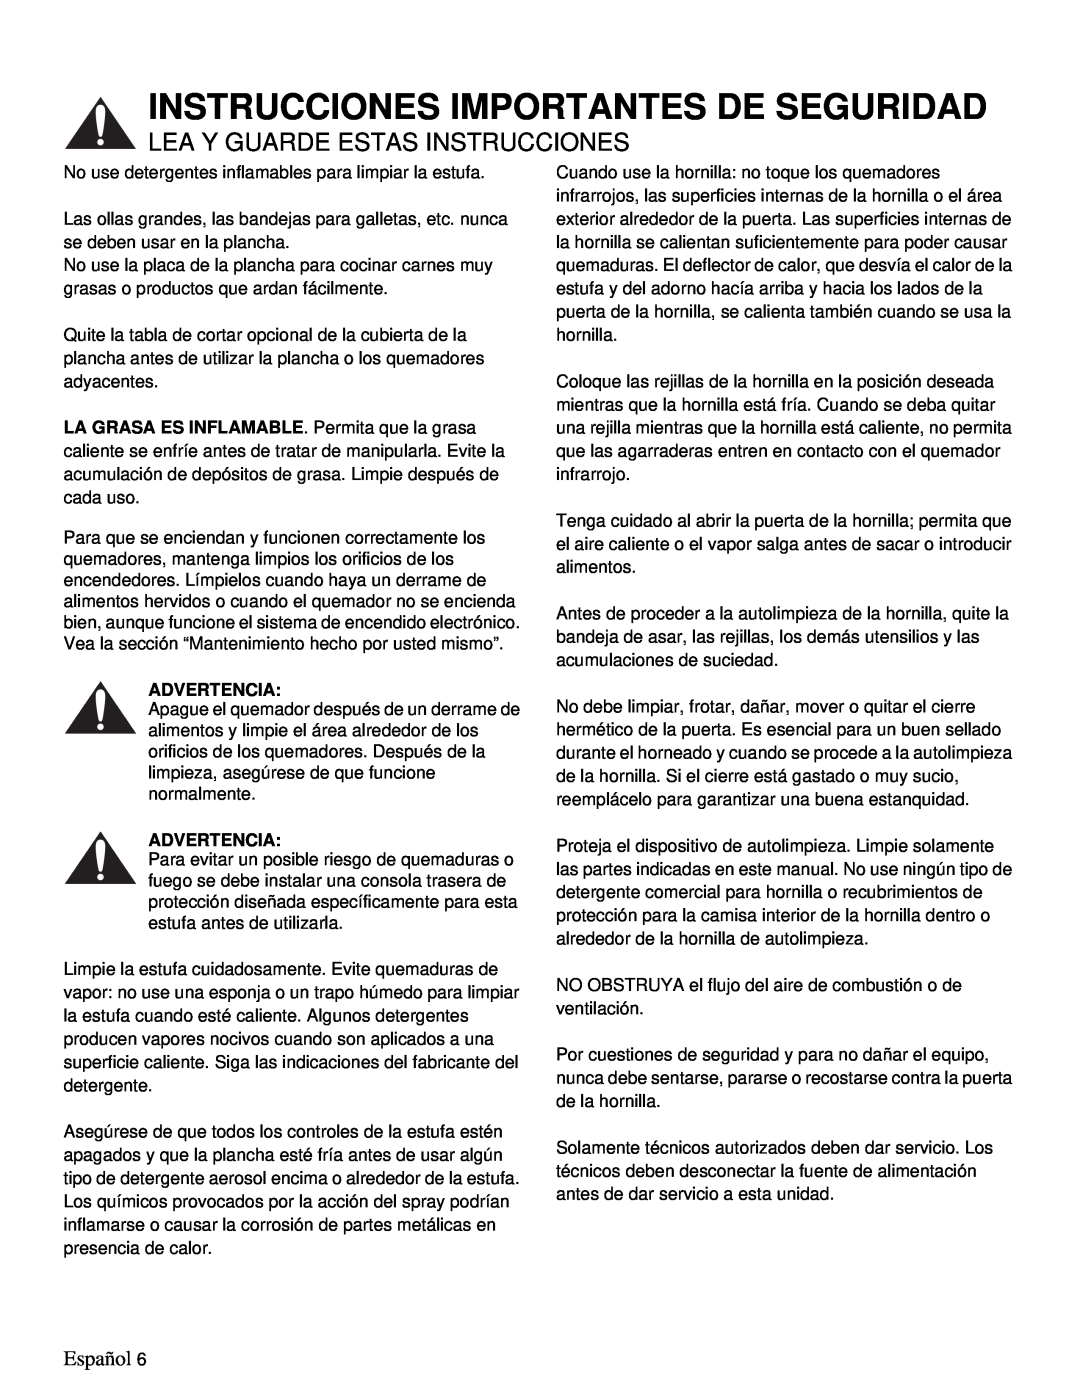 Thermador PRD48, PRD36 manual Instrucciones Importantes De Seguridad, Lea Y Guarde Estas Instrucciones, Español, Advertencia 